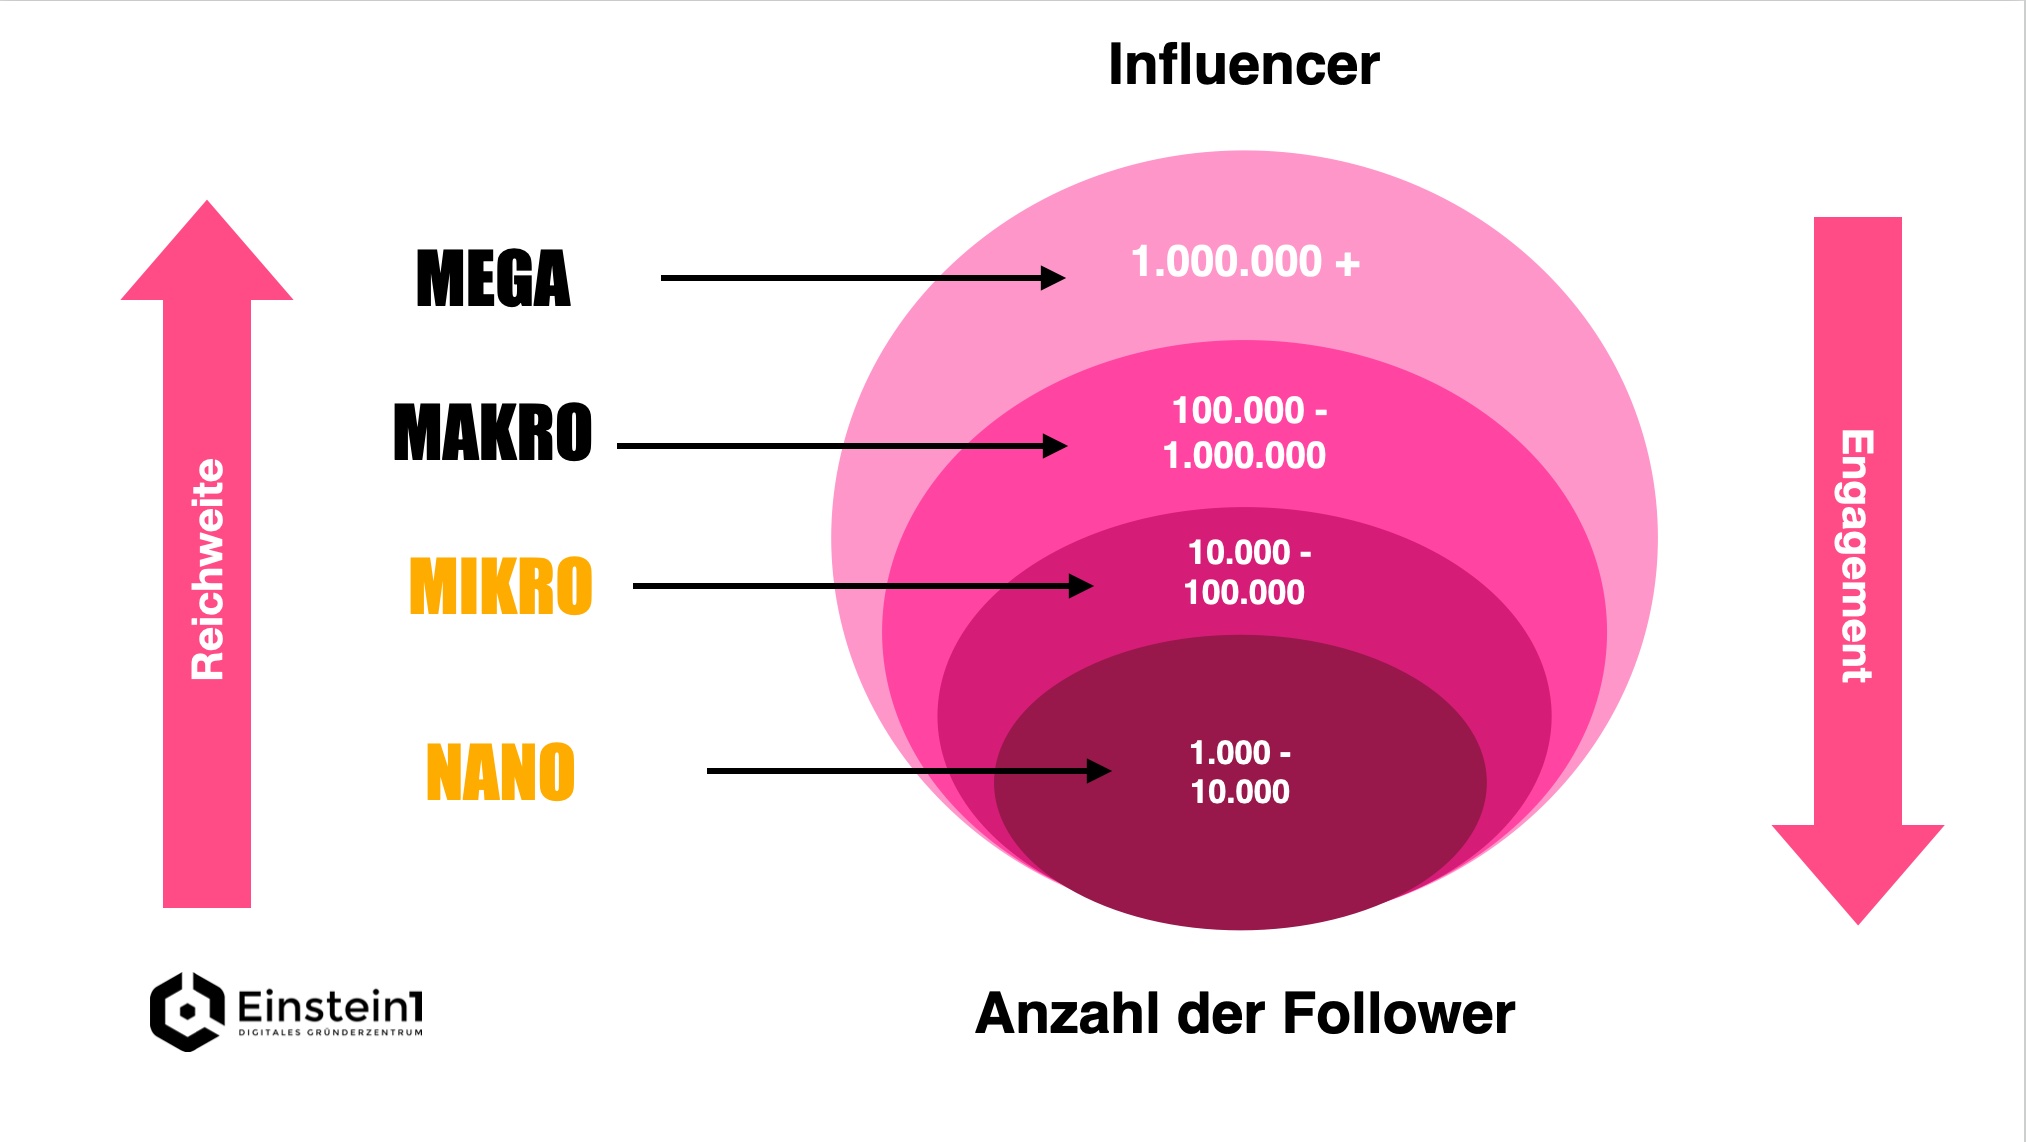 nano-influencer-kleine-influencer-mit-hoher-autorität-arten-von-influencern-einstein1